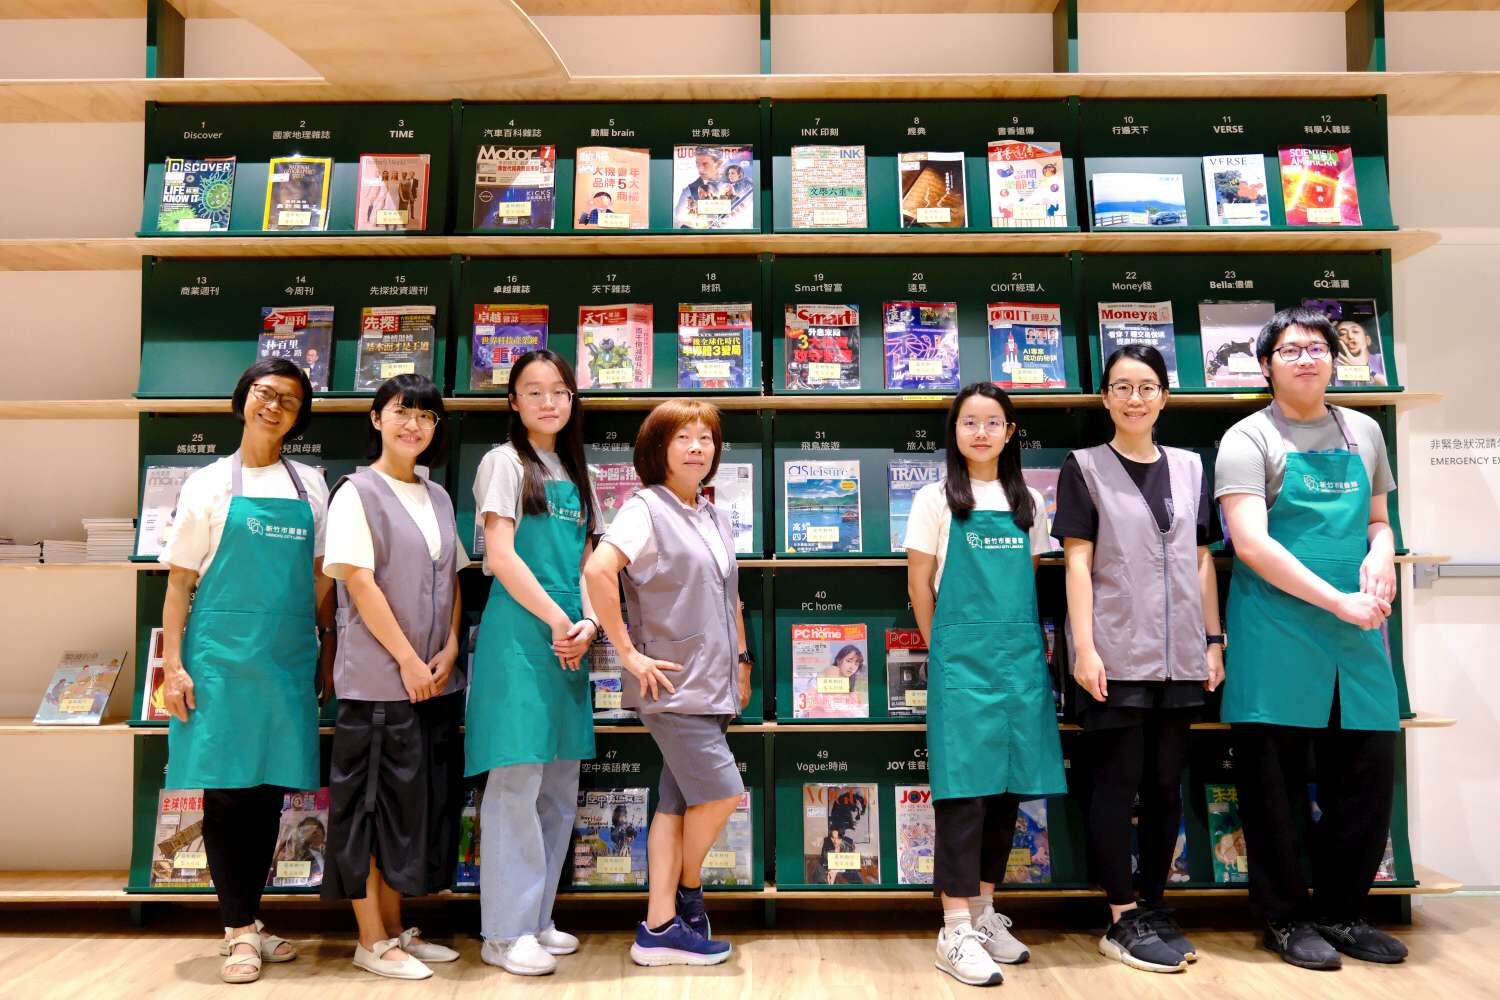 新竹市圖書館館員制服正式亮相，圖為龍山分館館員合影。